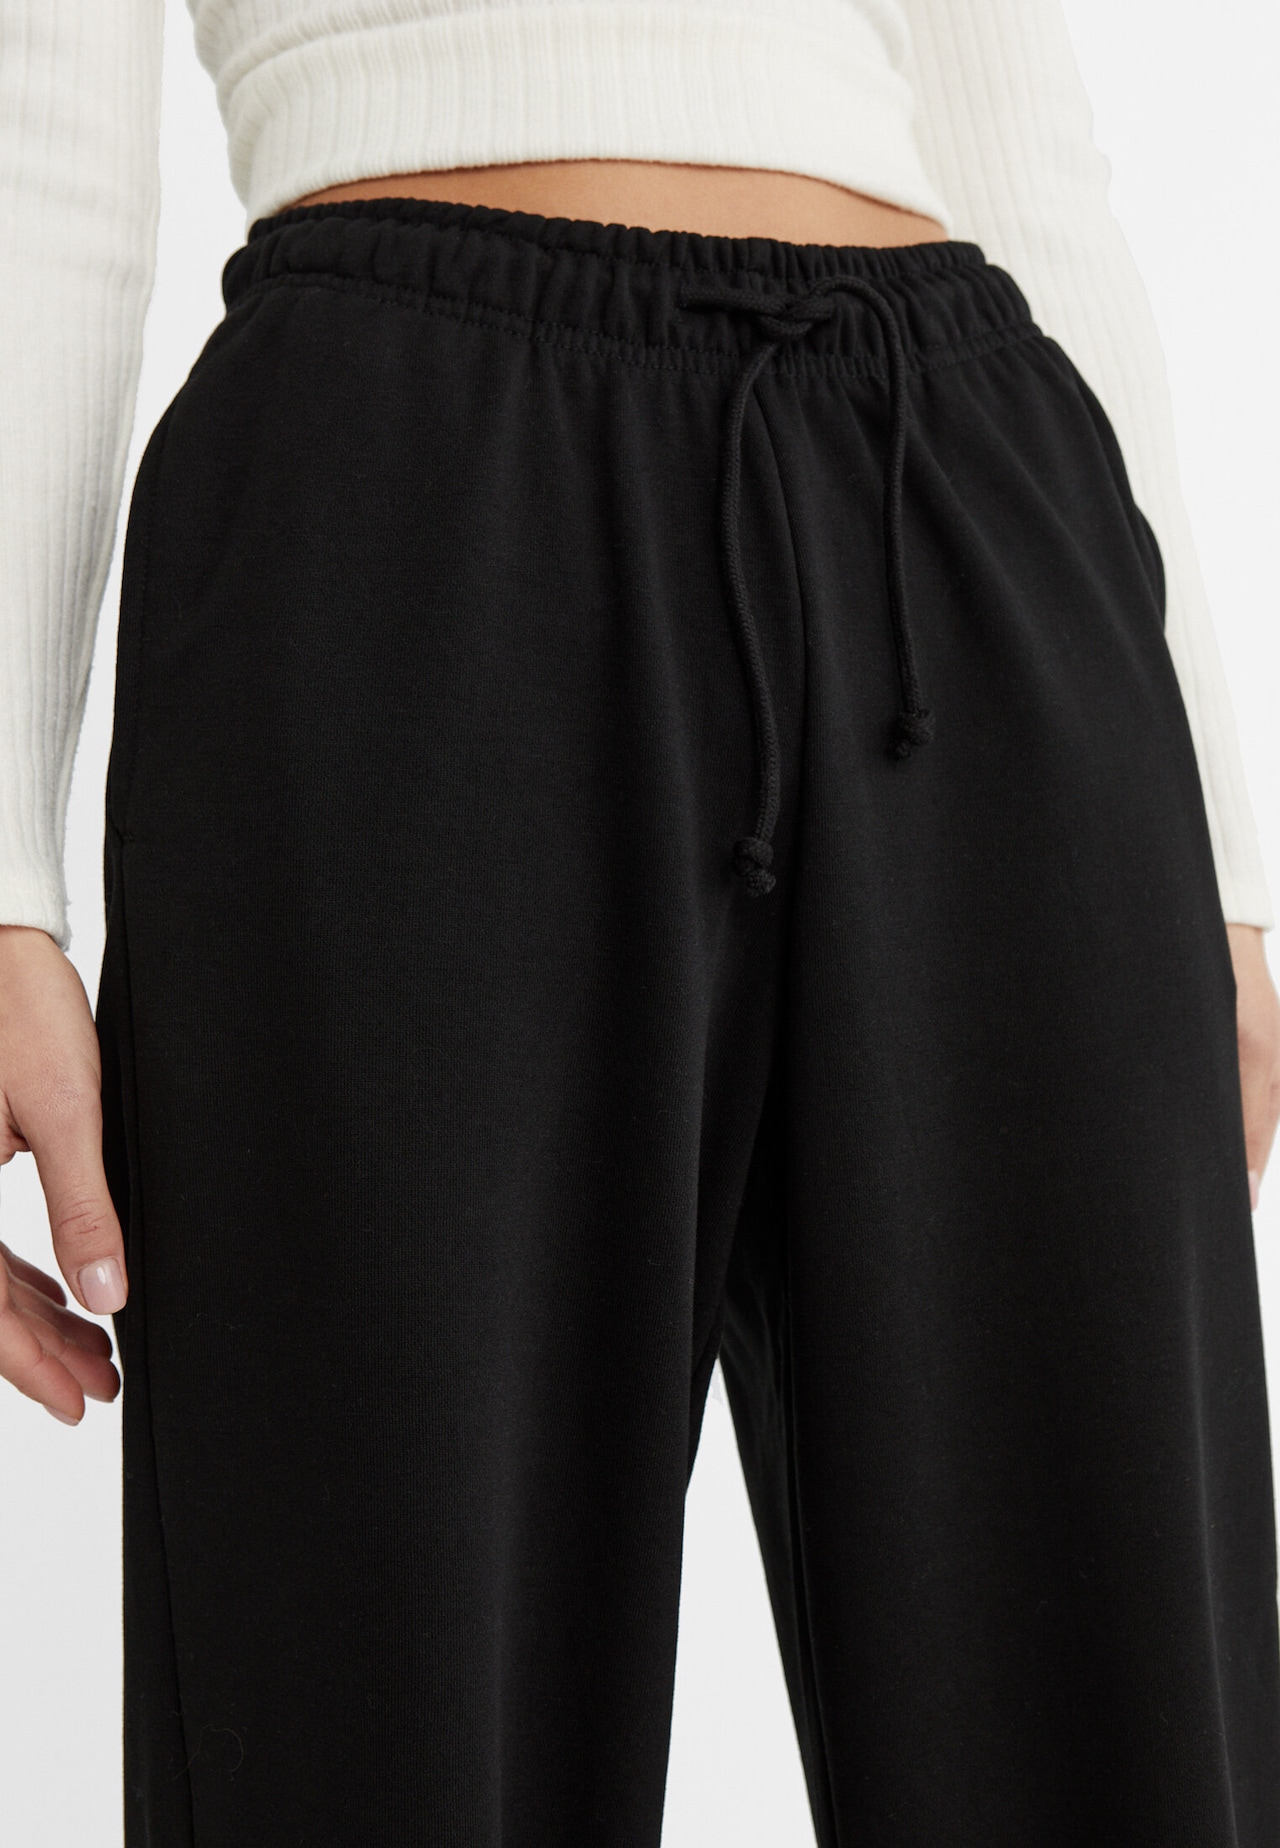 Casual High Waist Pant Loose Sweatpants Woman Trousers Capris Wide Leg Pants  Women Clothes (Color : Black, Size : XX-Large) : : Clothing, Shoes  & Accessories